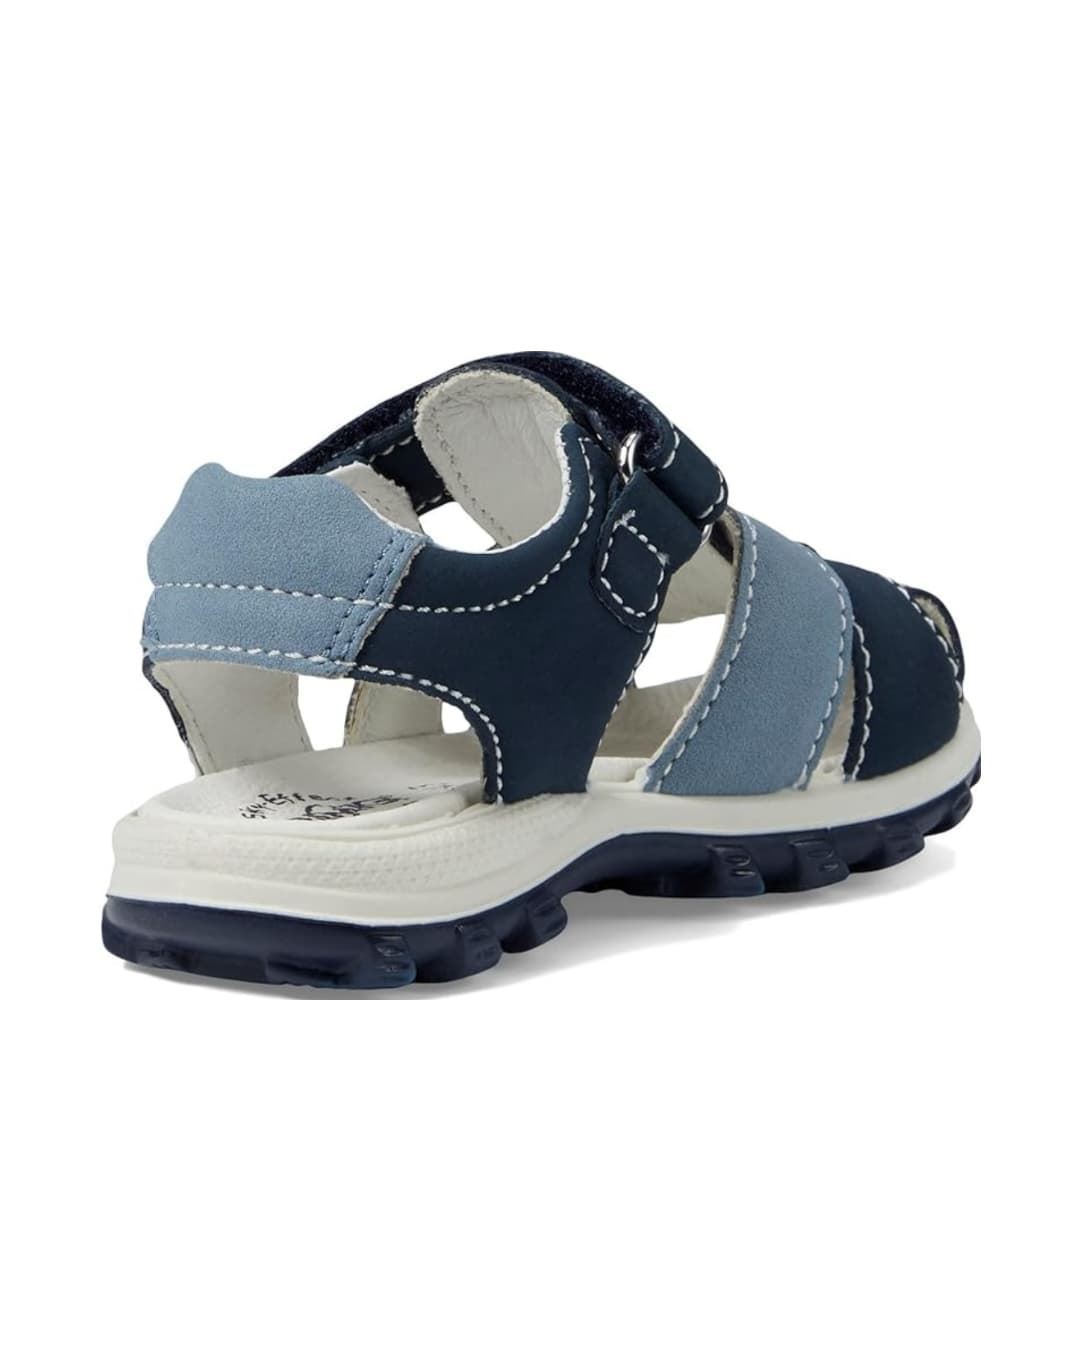 Primigi Sandals for children Navy Blue - Image 3